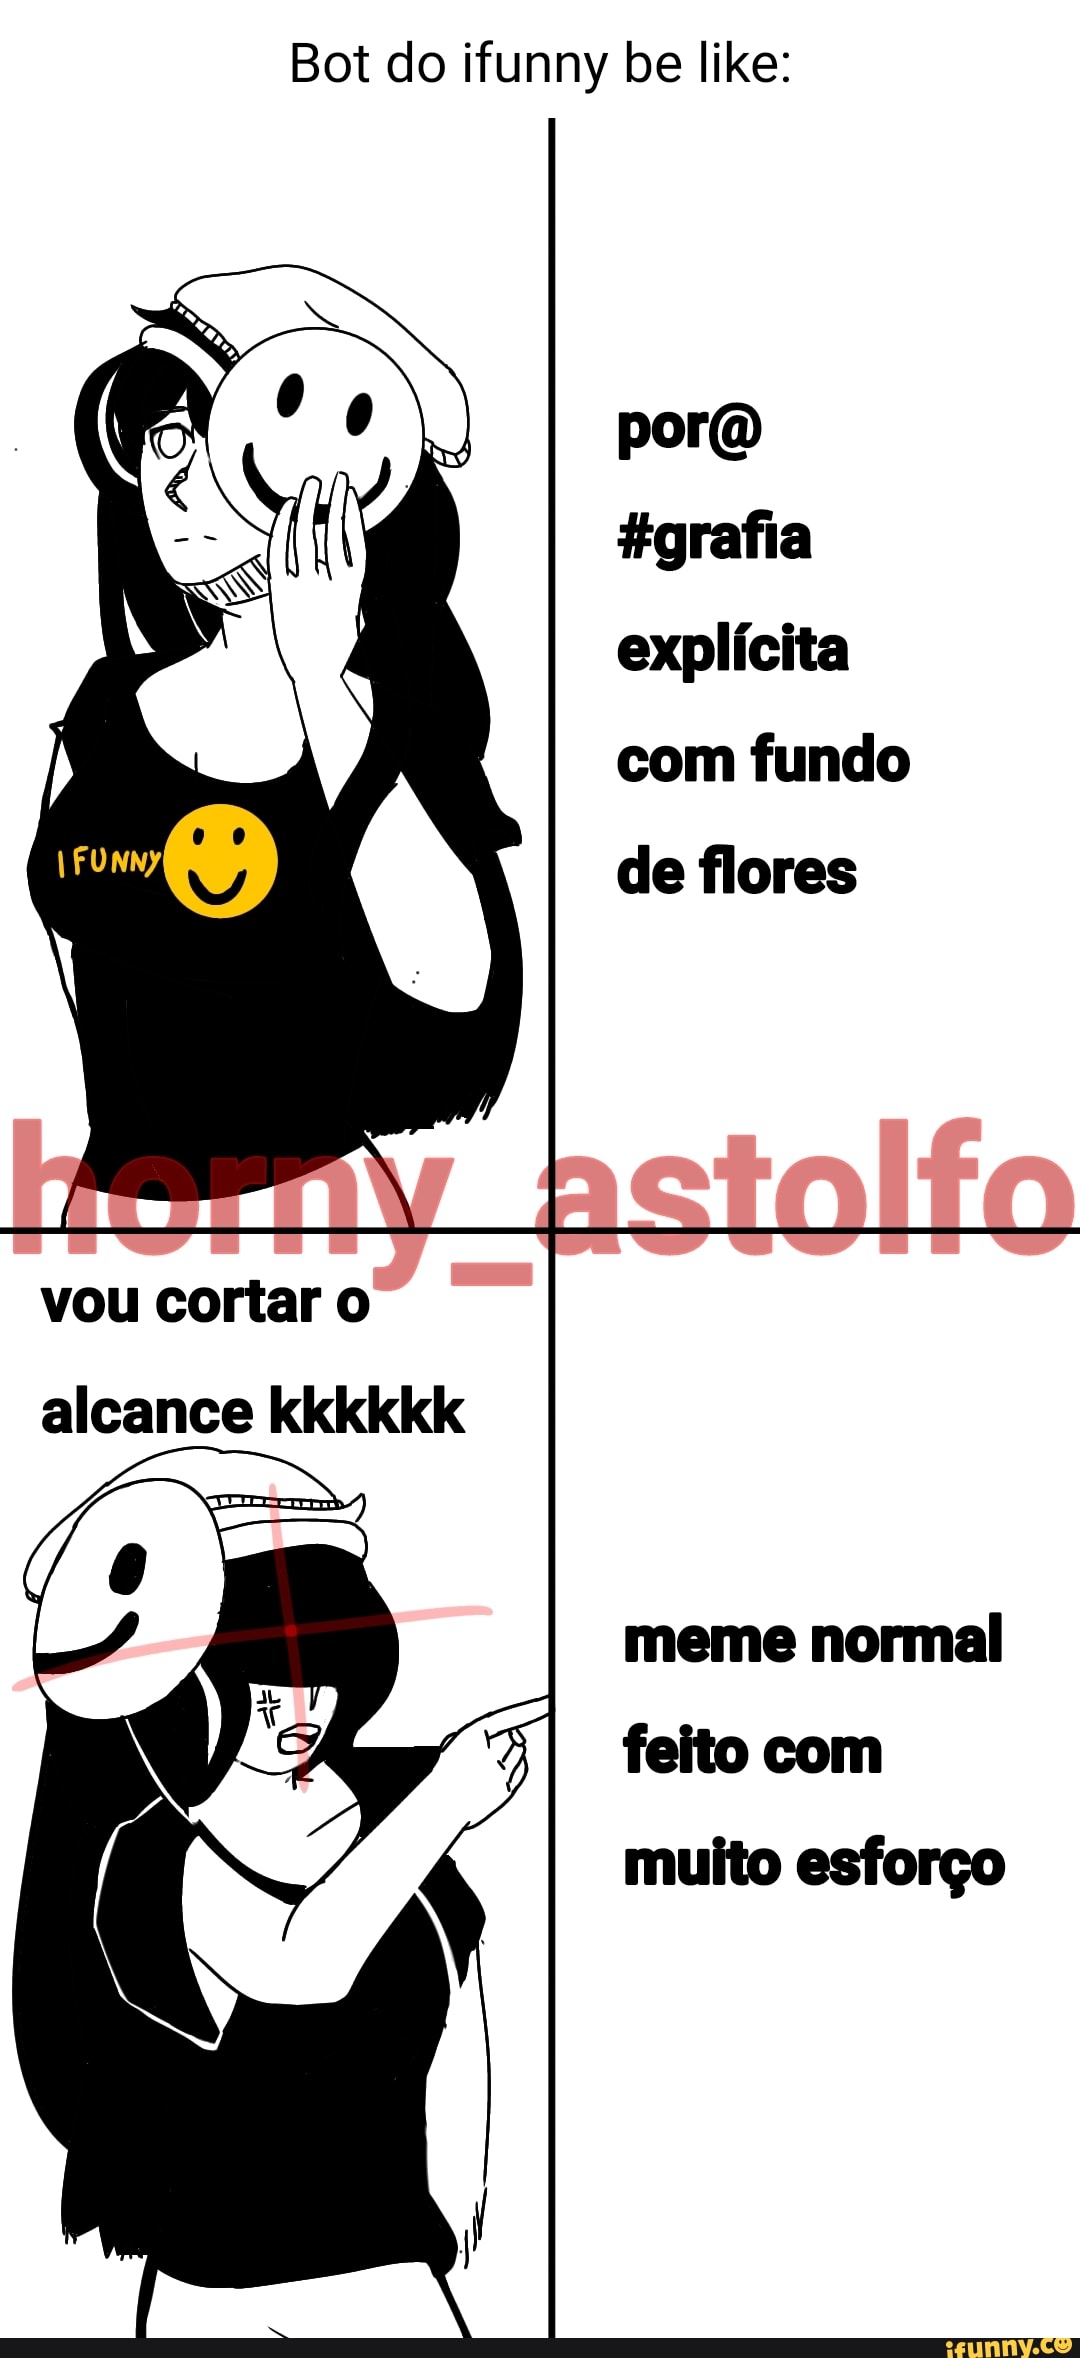 Memes de imagem 4Jlnim4N9 por XDnT_2022: 3 comentários - iFunny Brazil